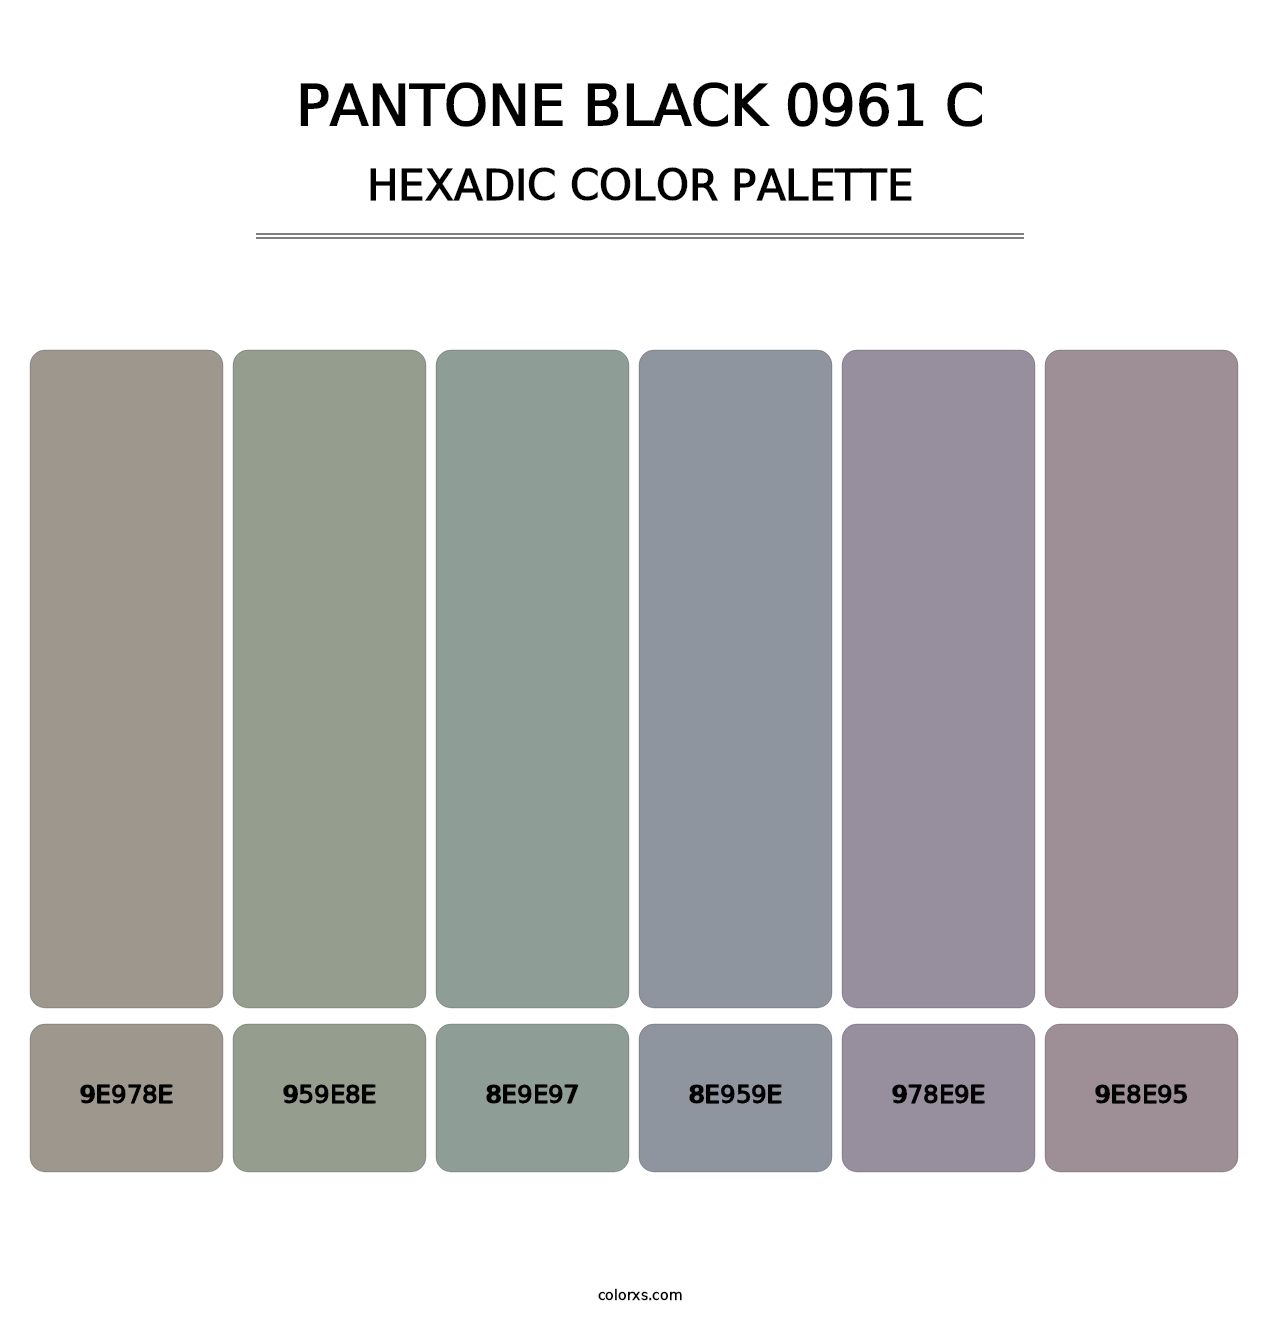 PANTONE Black 0961 C - Hexadic Color Palette